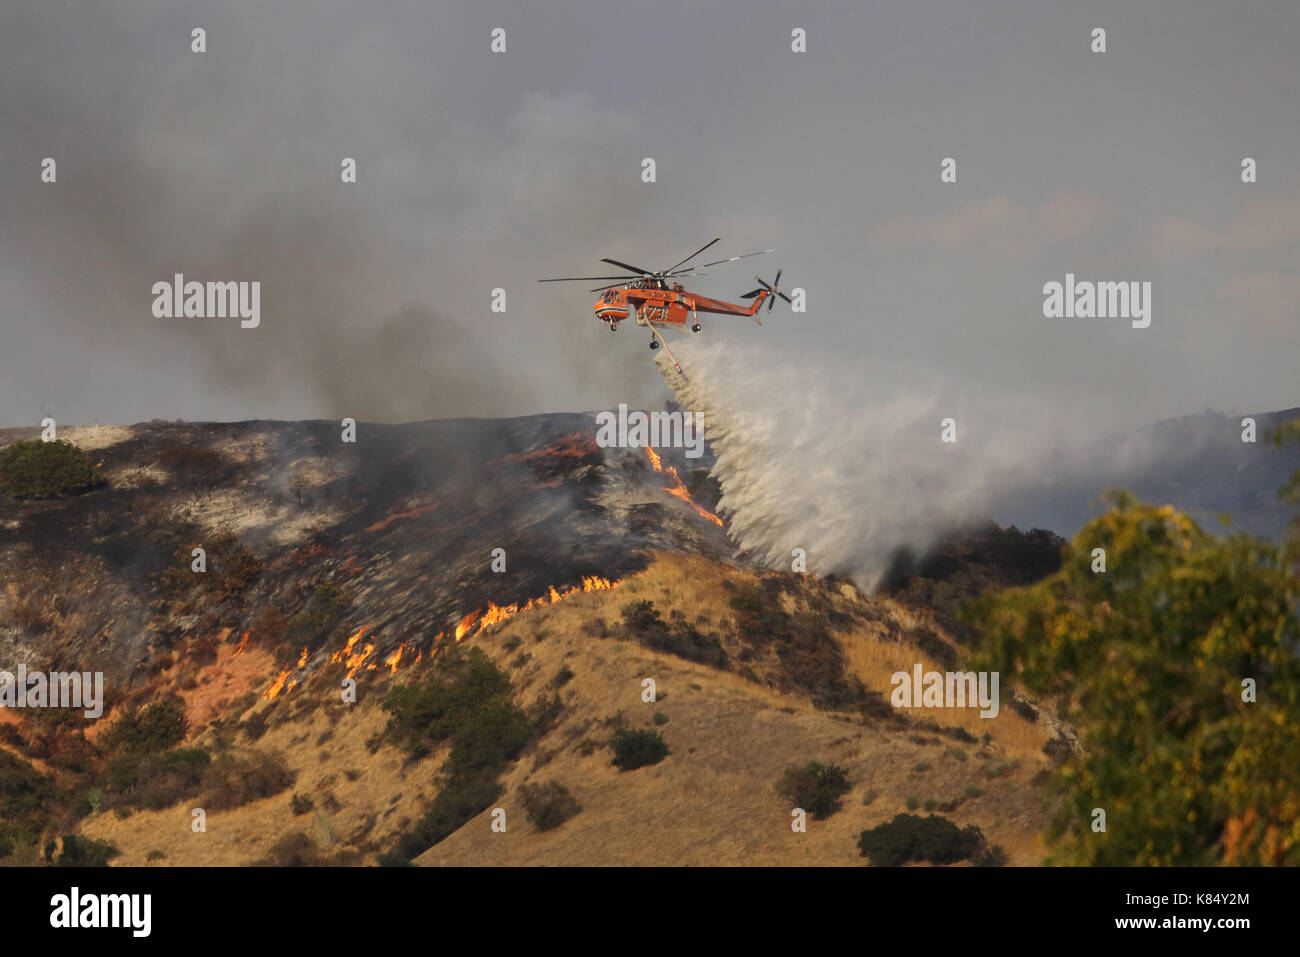 Los Angeles, CA/USA, Sept. 2, 2017: Eine Erickson Air-Crane Hubschrauber Tropfen chemische entflammbar auf dem La Thun Brand, der über 8.000 Hektar verbrannt. Stockfoto